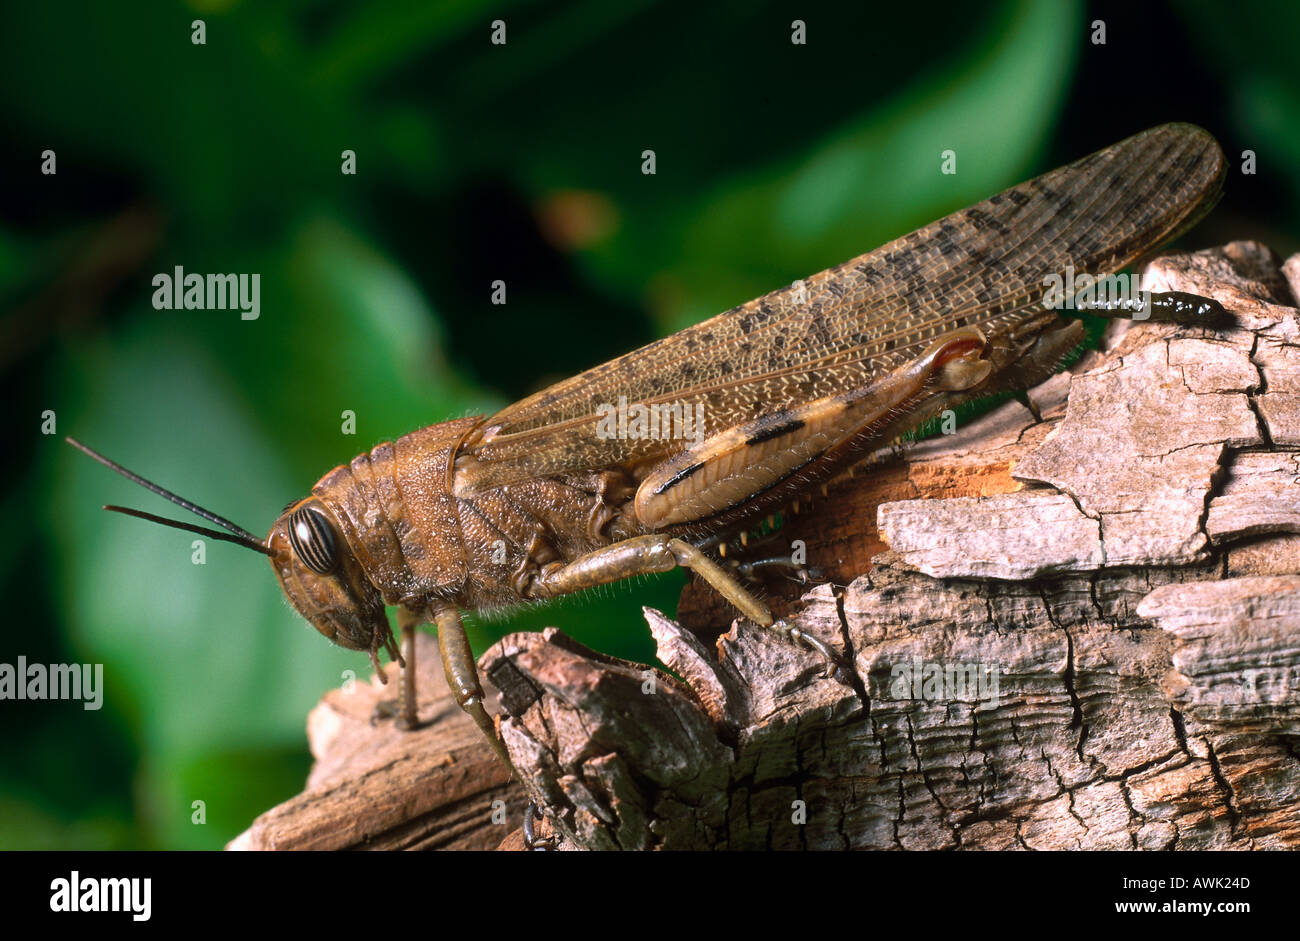 Close-up of Migratory locust (Locusta migratoria) on wood Stock Photo